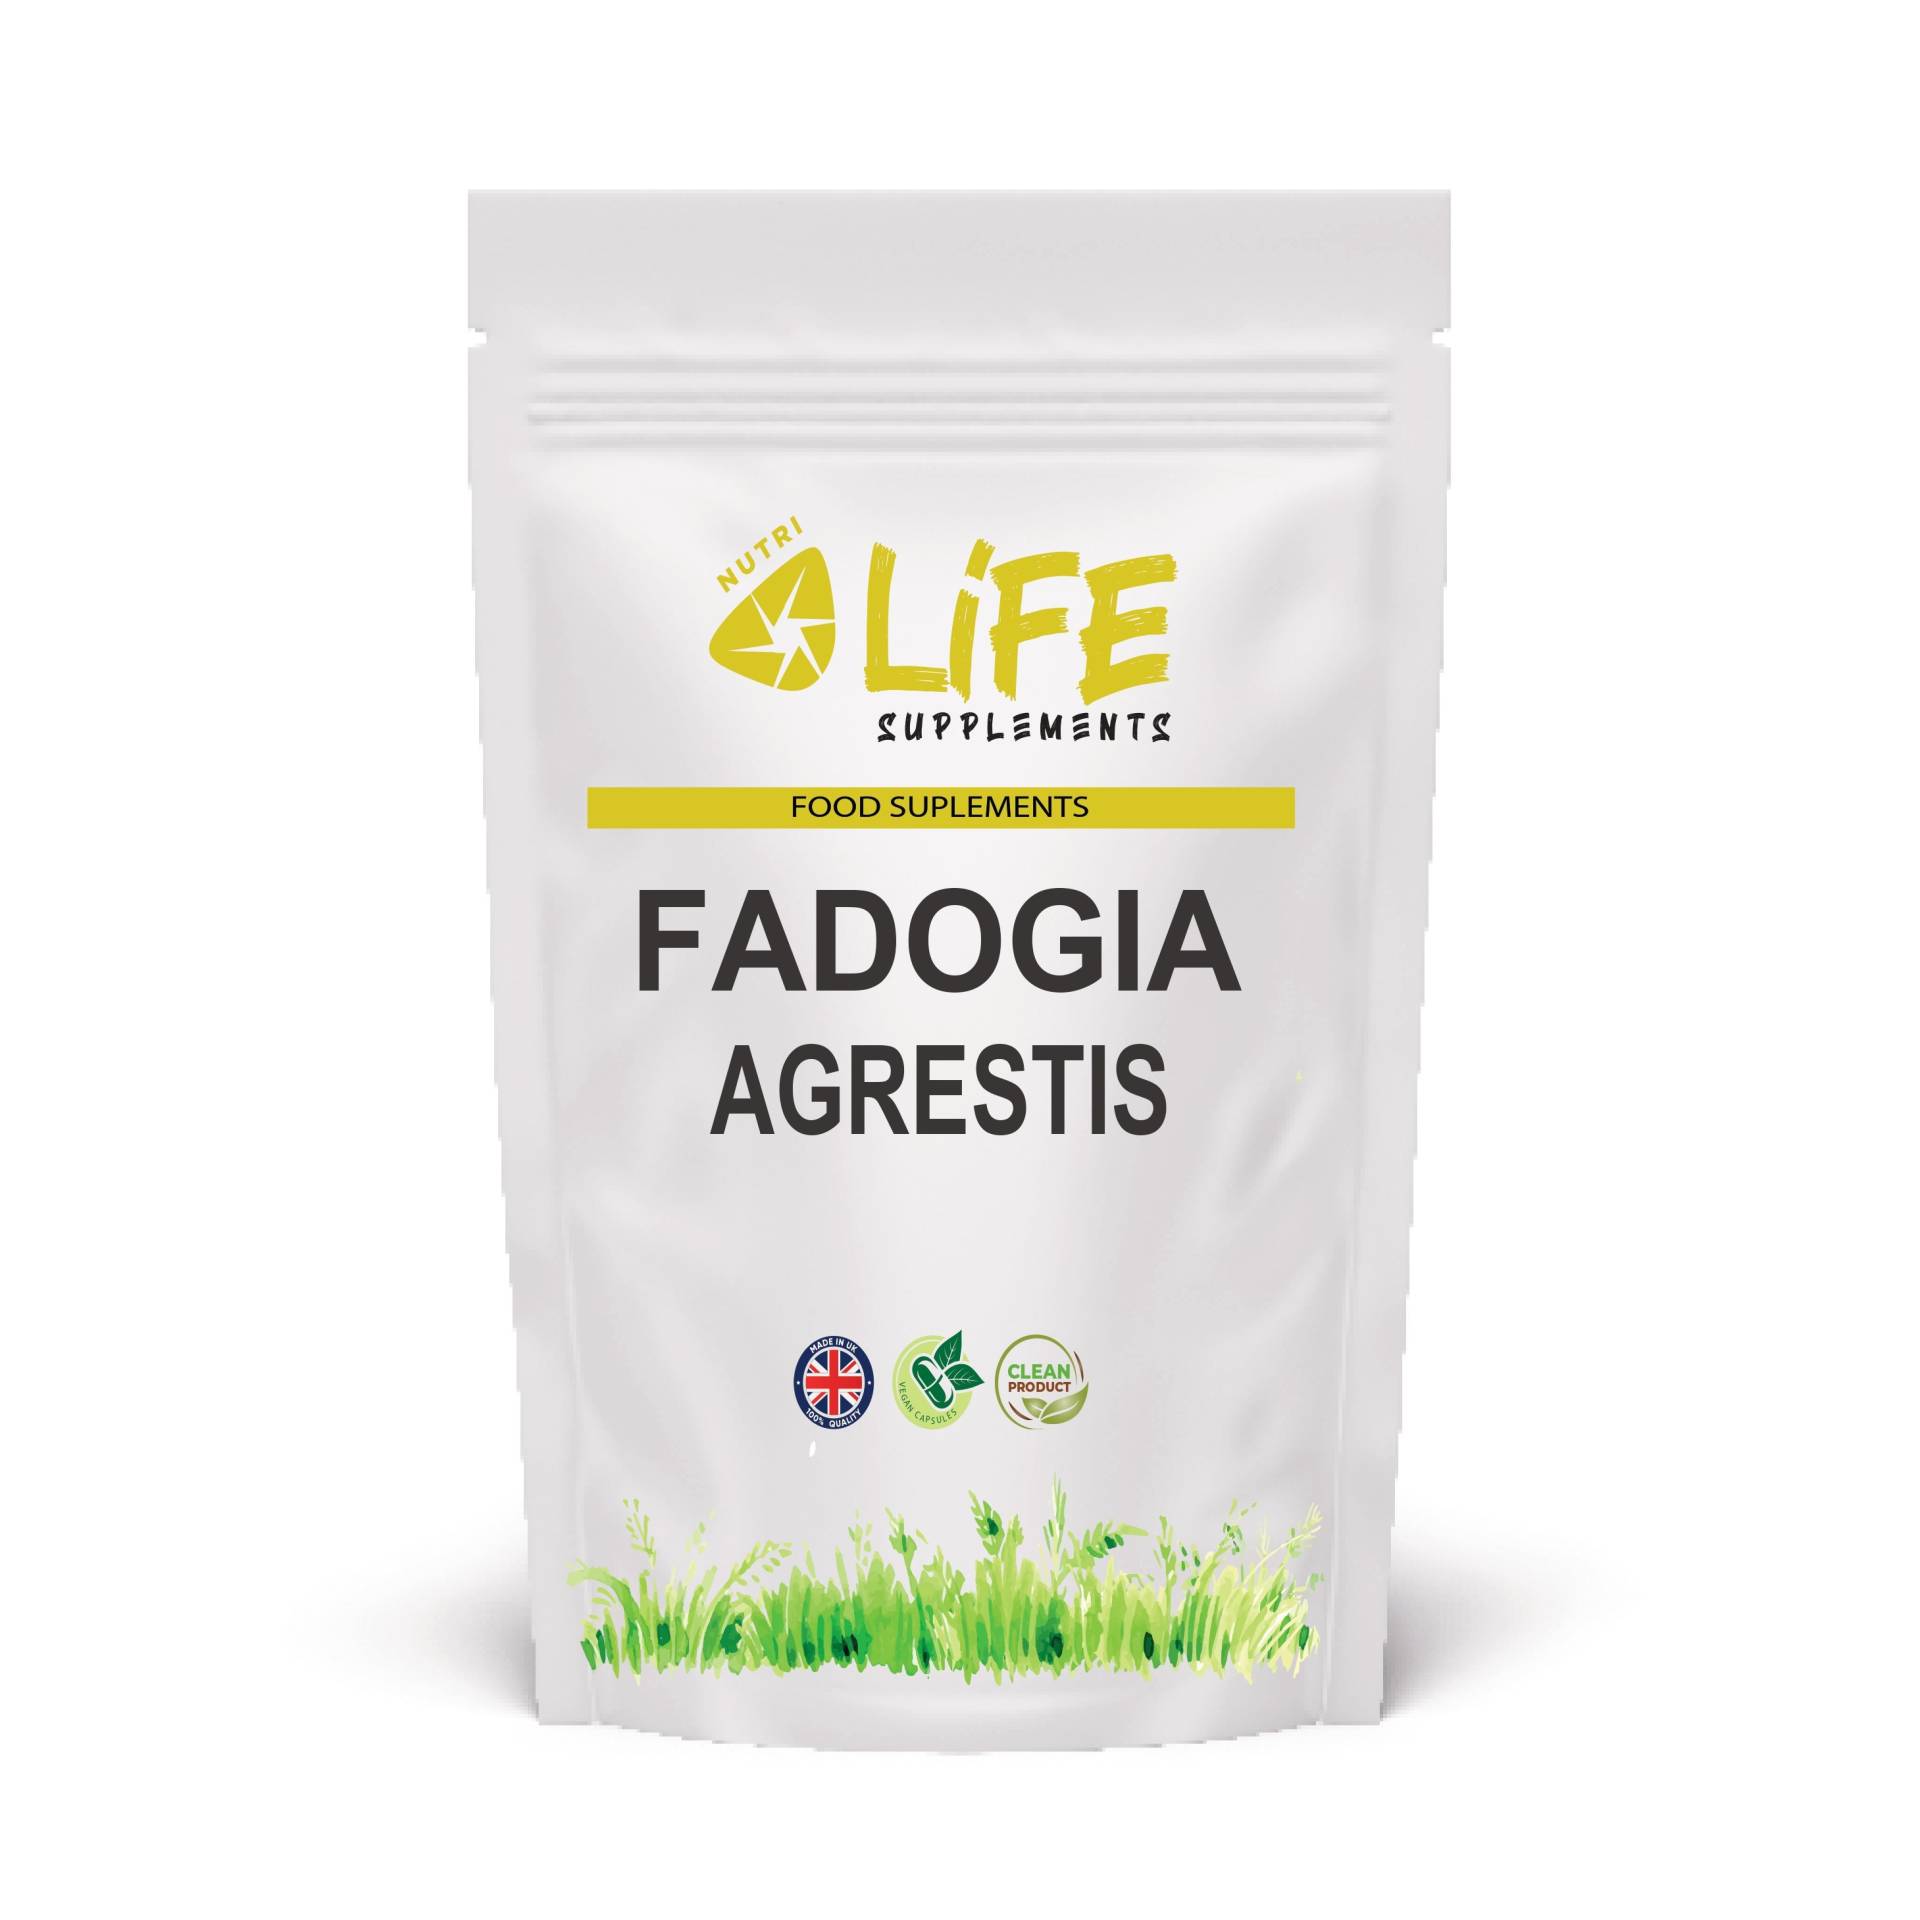 Fadogia Agrestis 600 Mg Naturextrakt 20 1 Ergänzungskapseln von NutriLifeSupplements